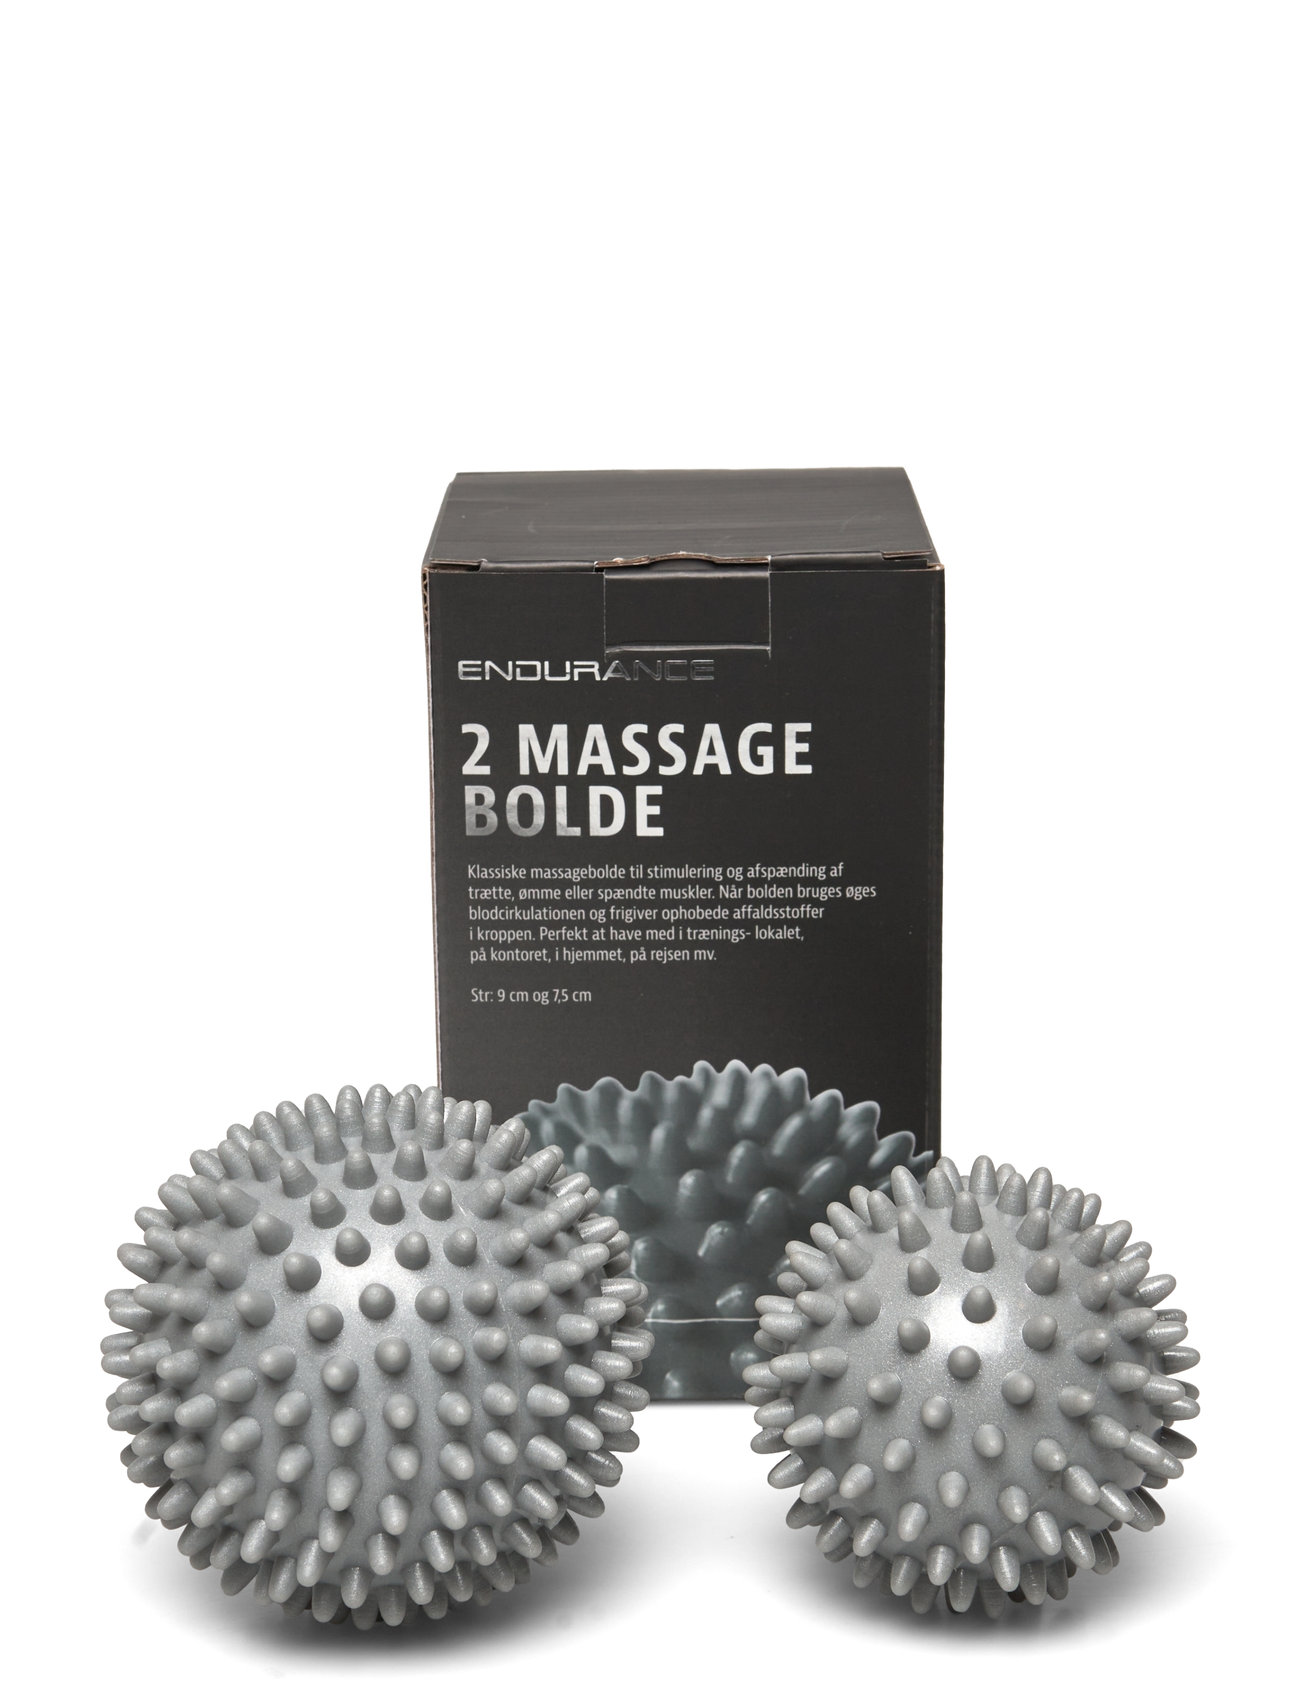 Hard Massage Ball 2 Pcs Sport Sports Equipment Workout Equipment Foam Rolls & Massage Balls Silver Endurance